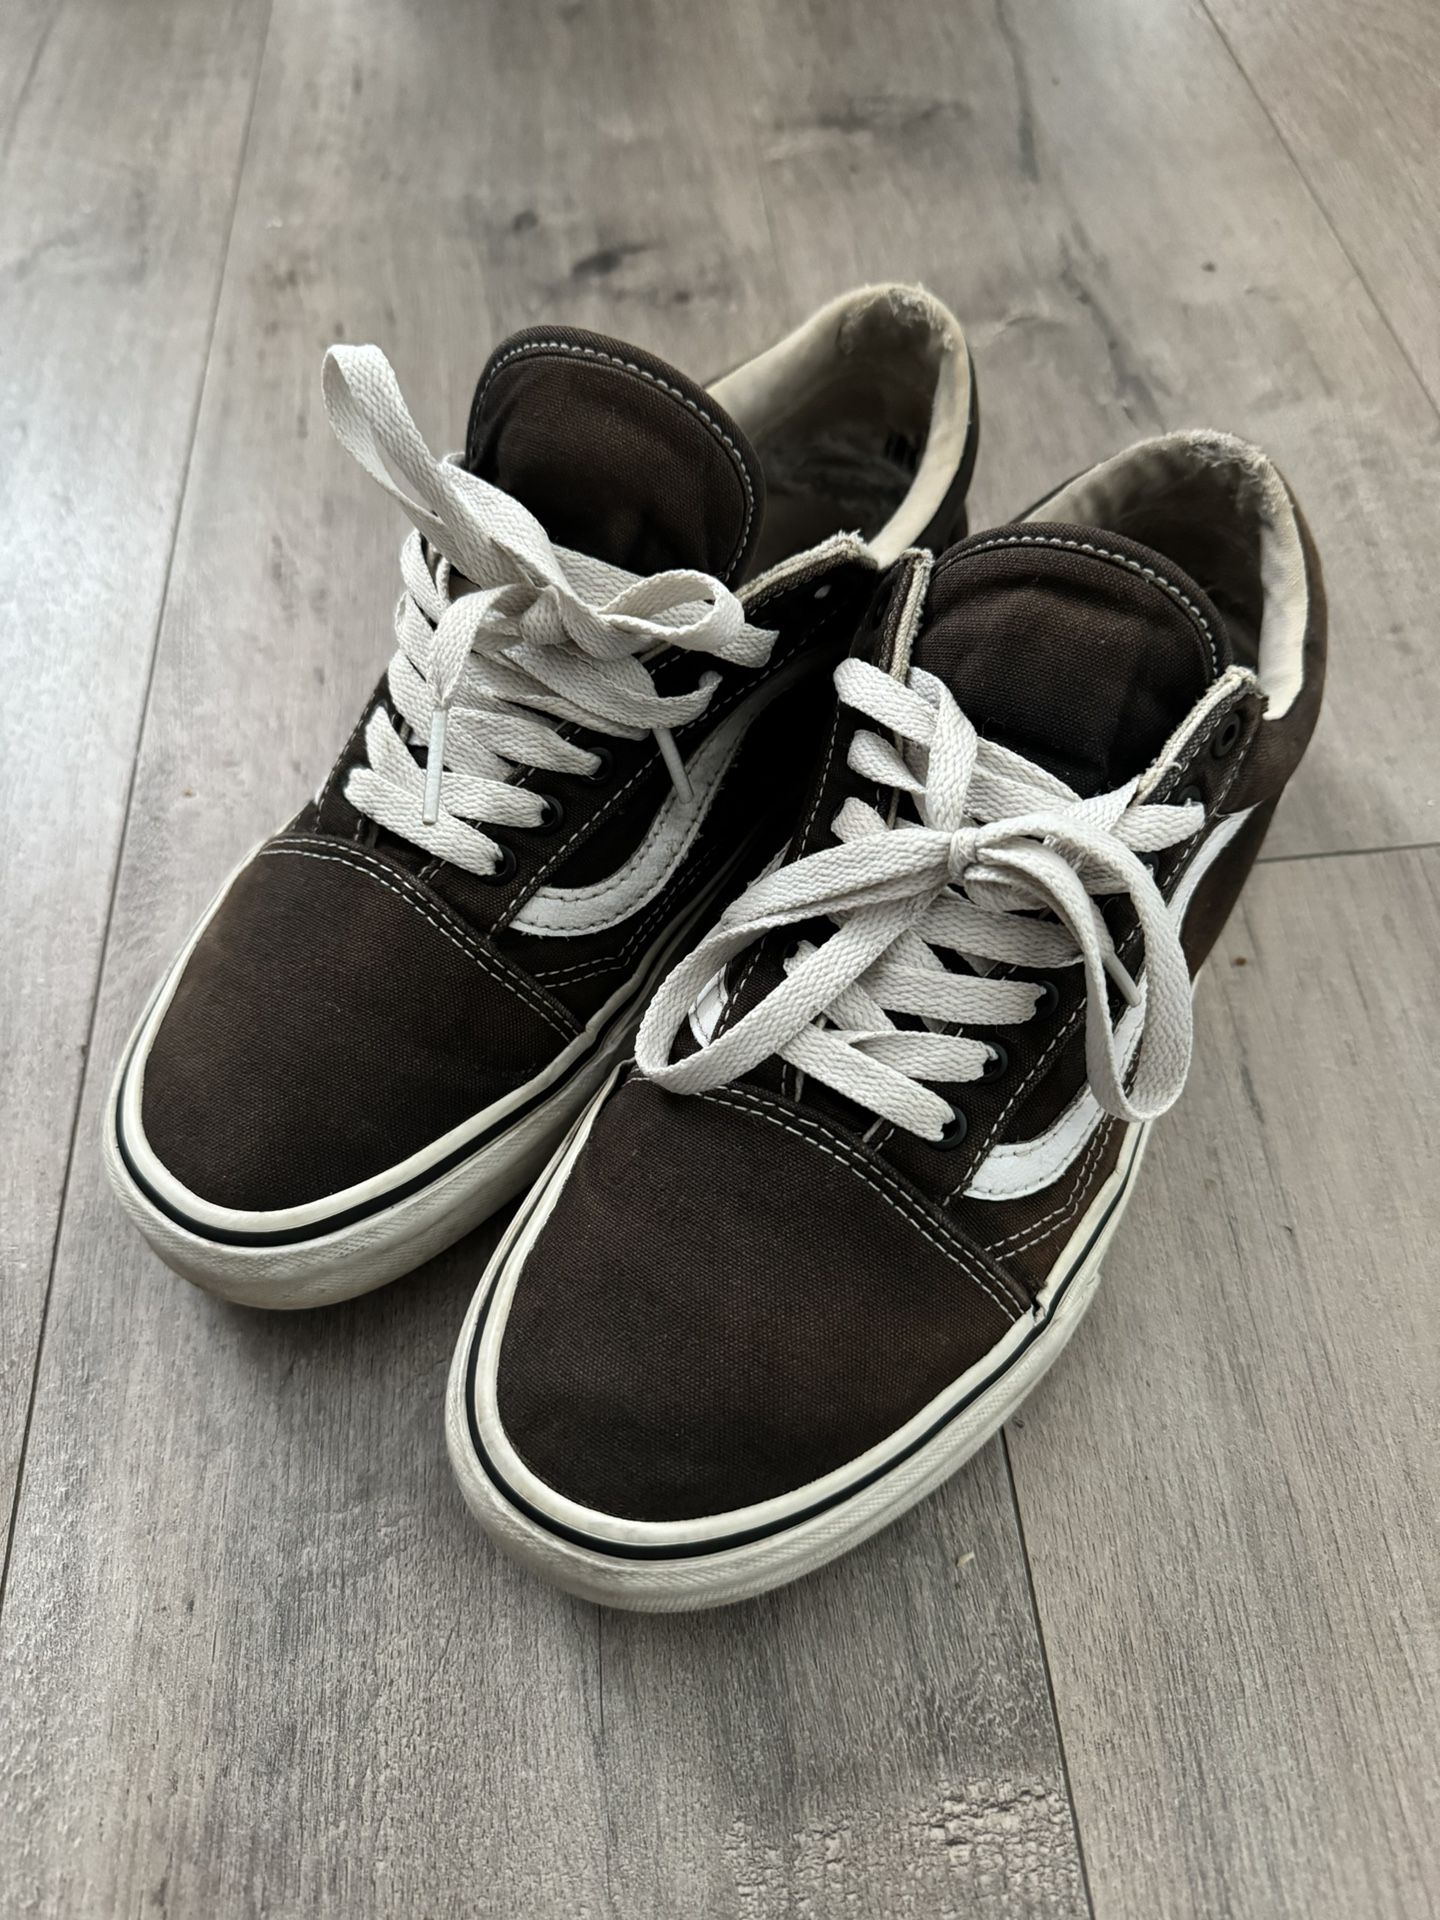 Men’s Vans Shoes Black Size 8 